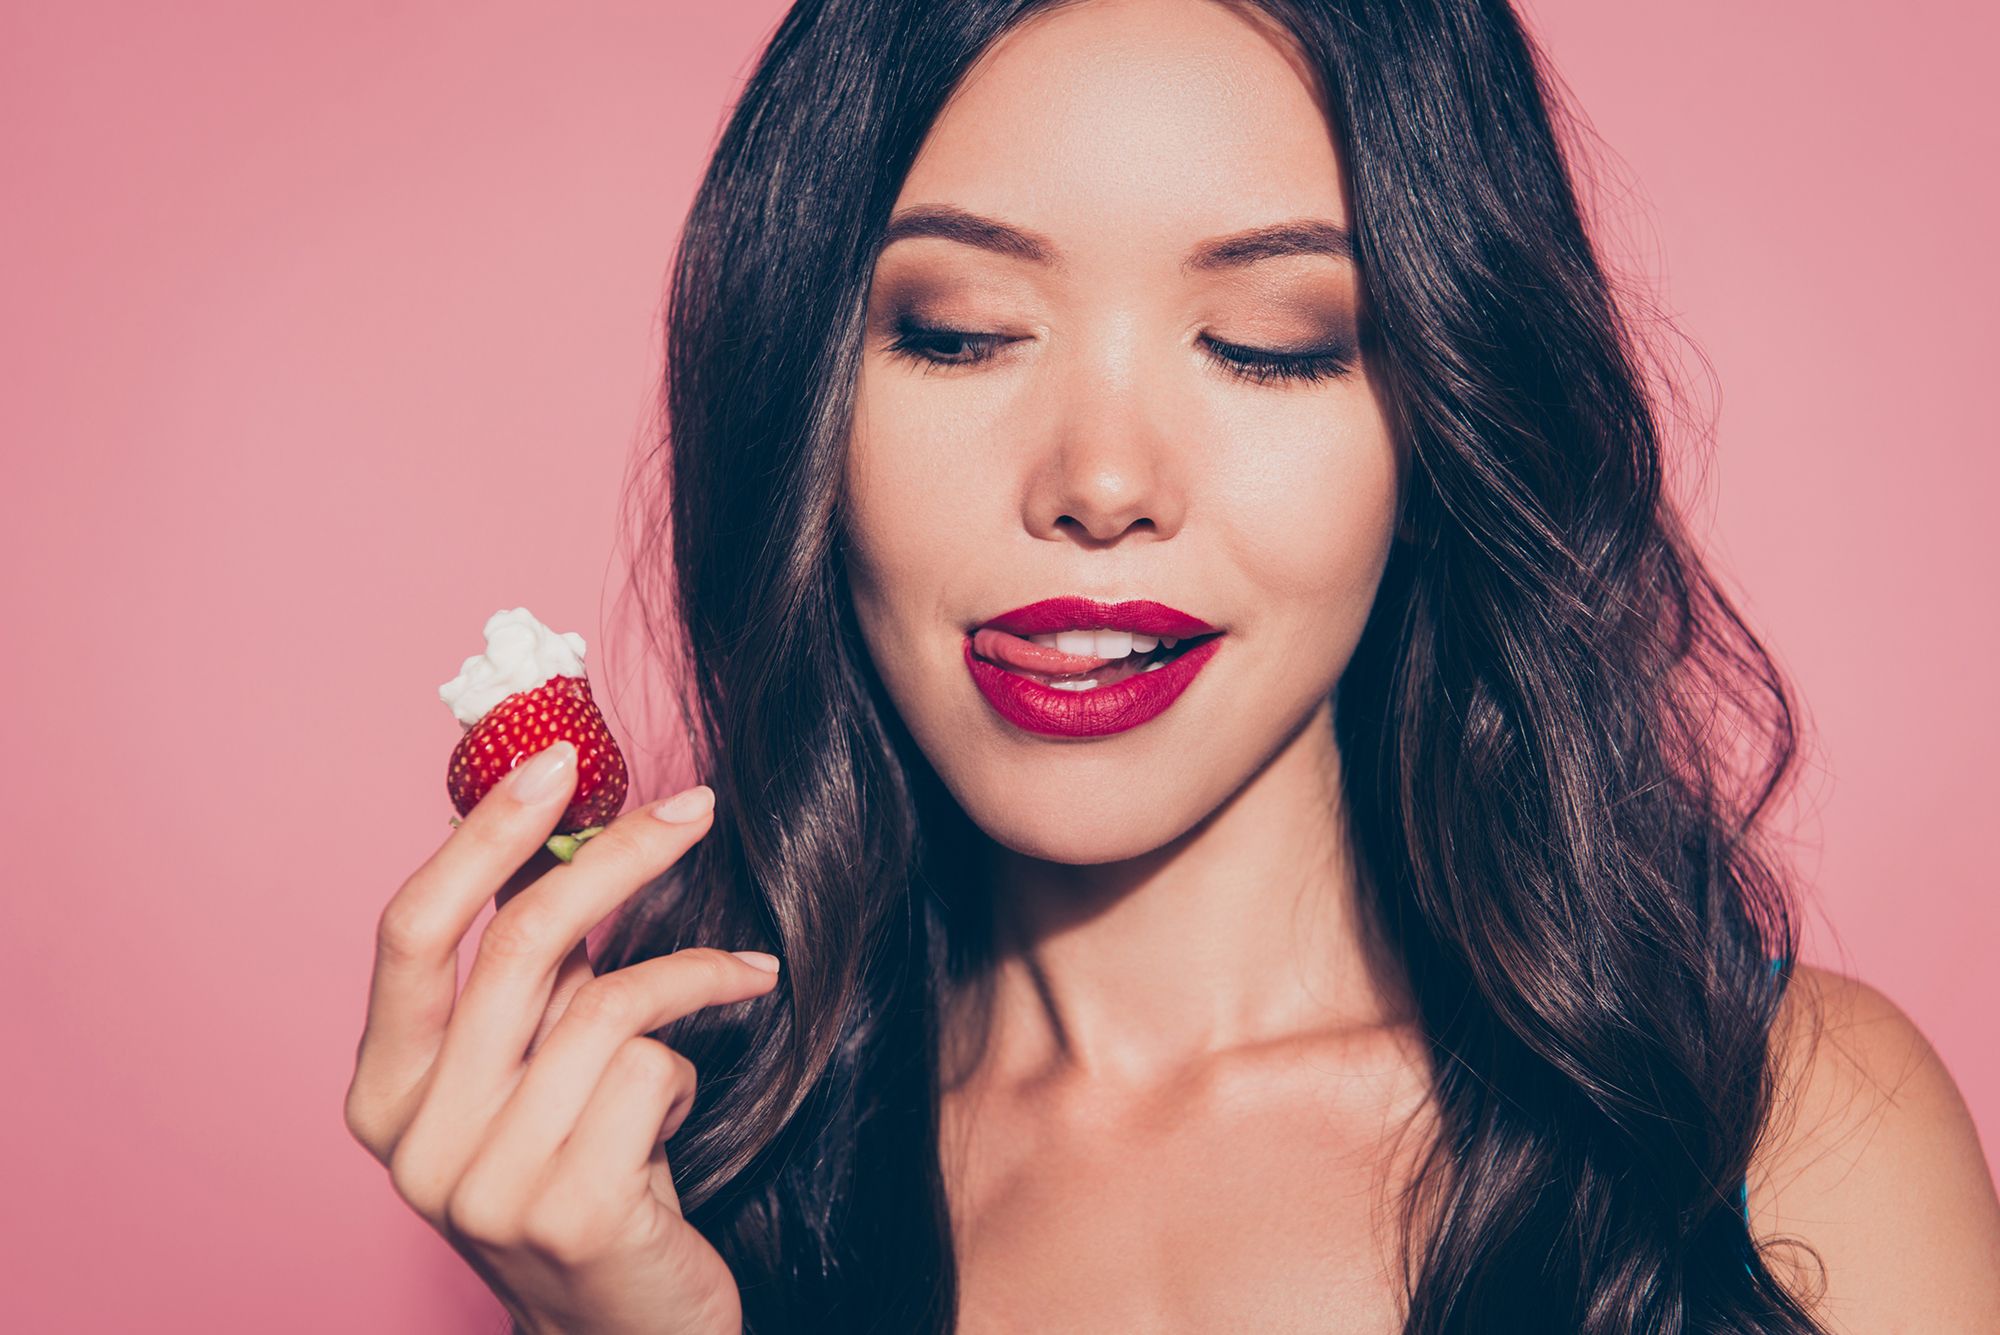 Frau hält eine Erdbeere in der Hand und leckt sich die Lippen